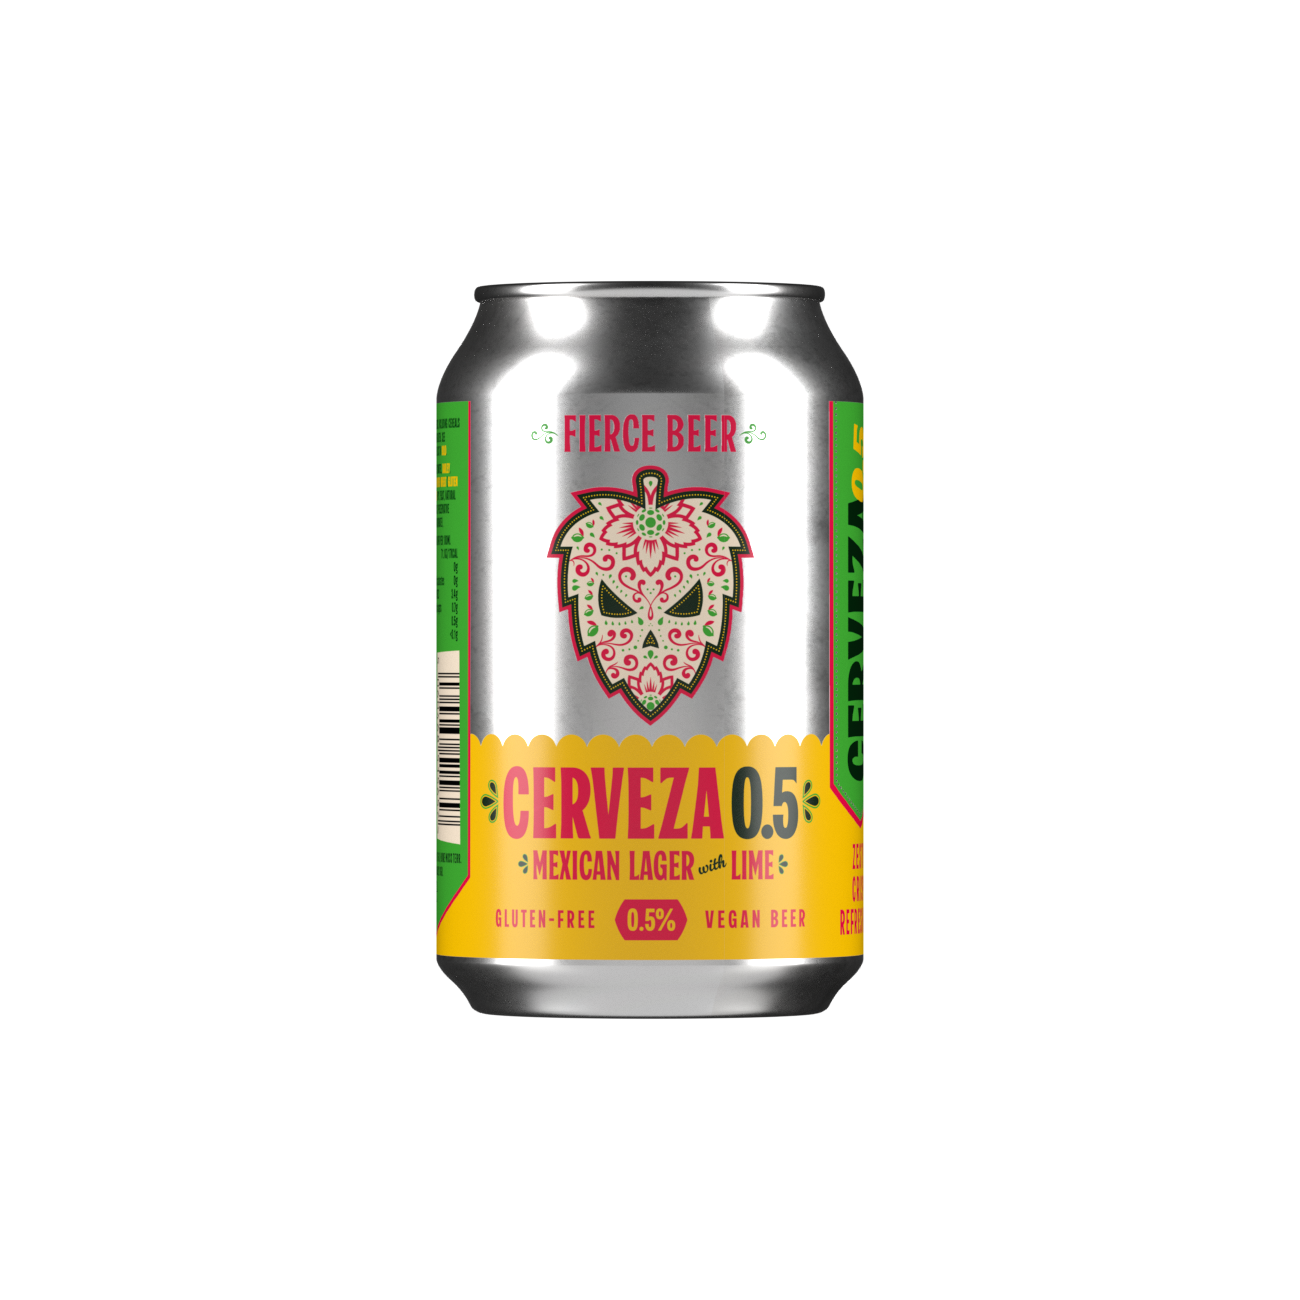 CERVEZA 0.5 – Fierce Beer